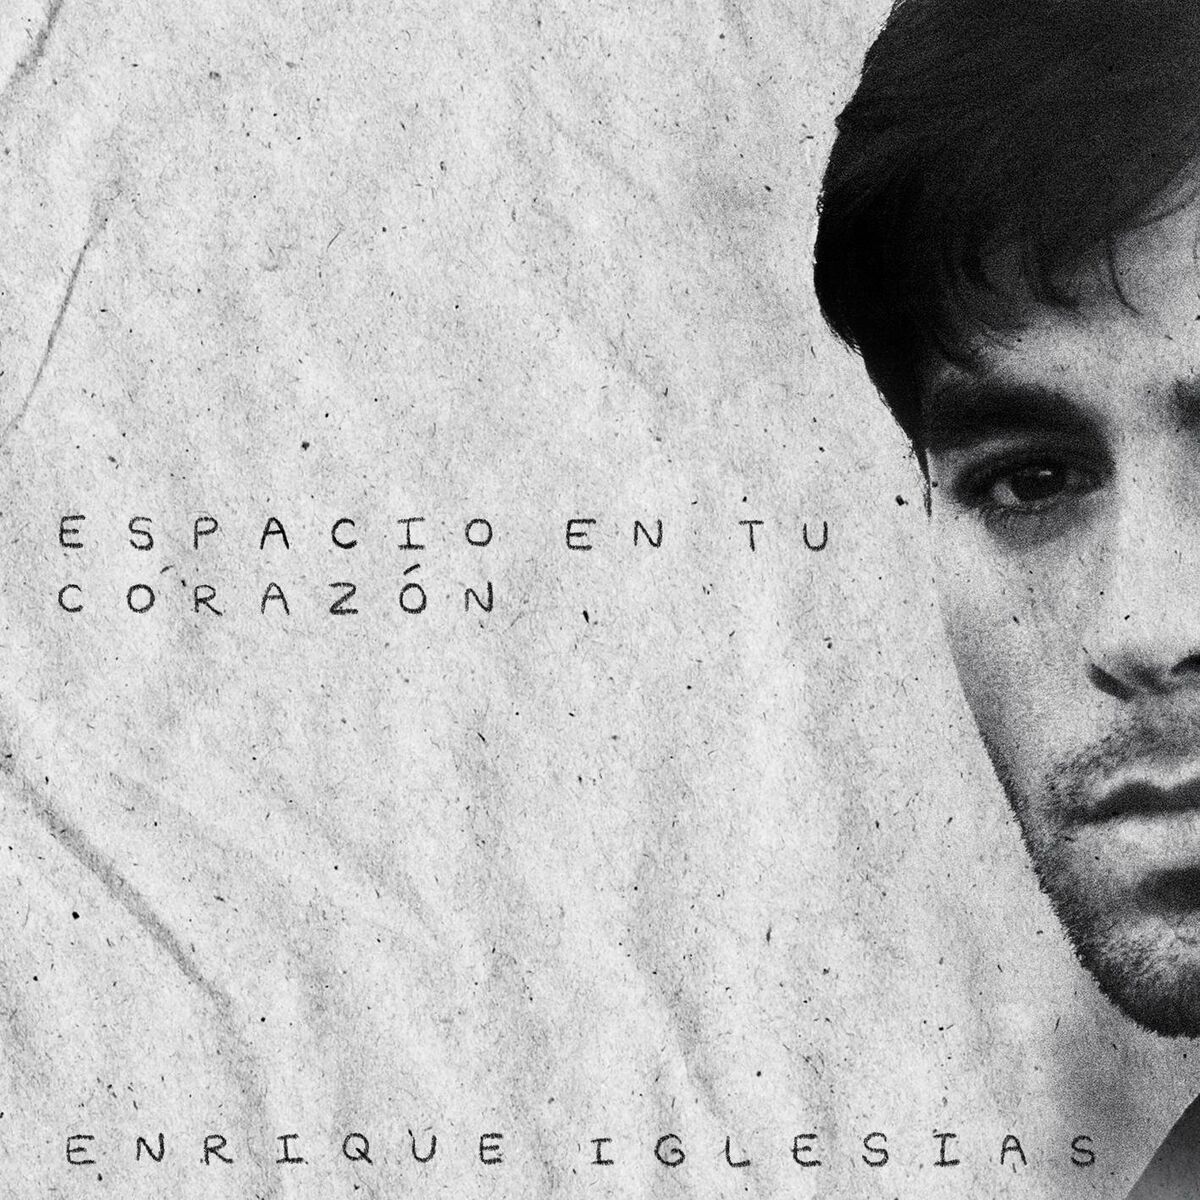 Enrique Iglesias - Espacio En Tu Corazon.mp3